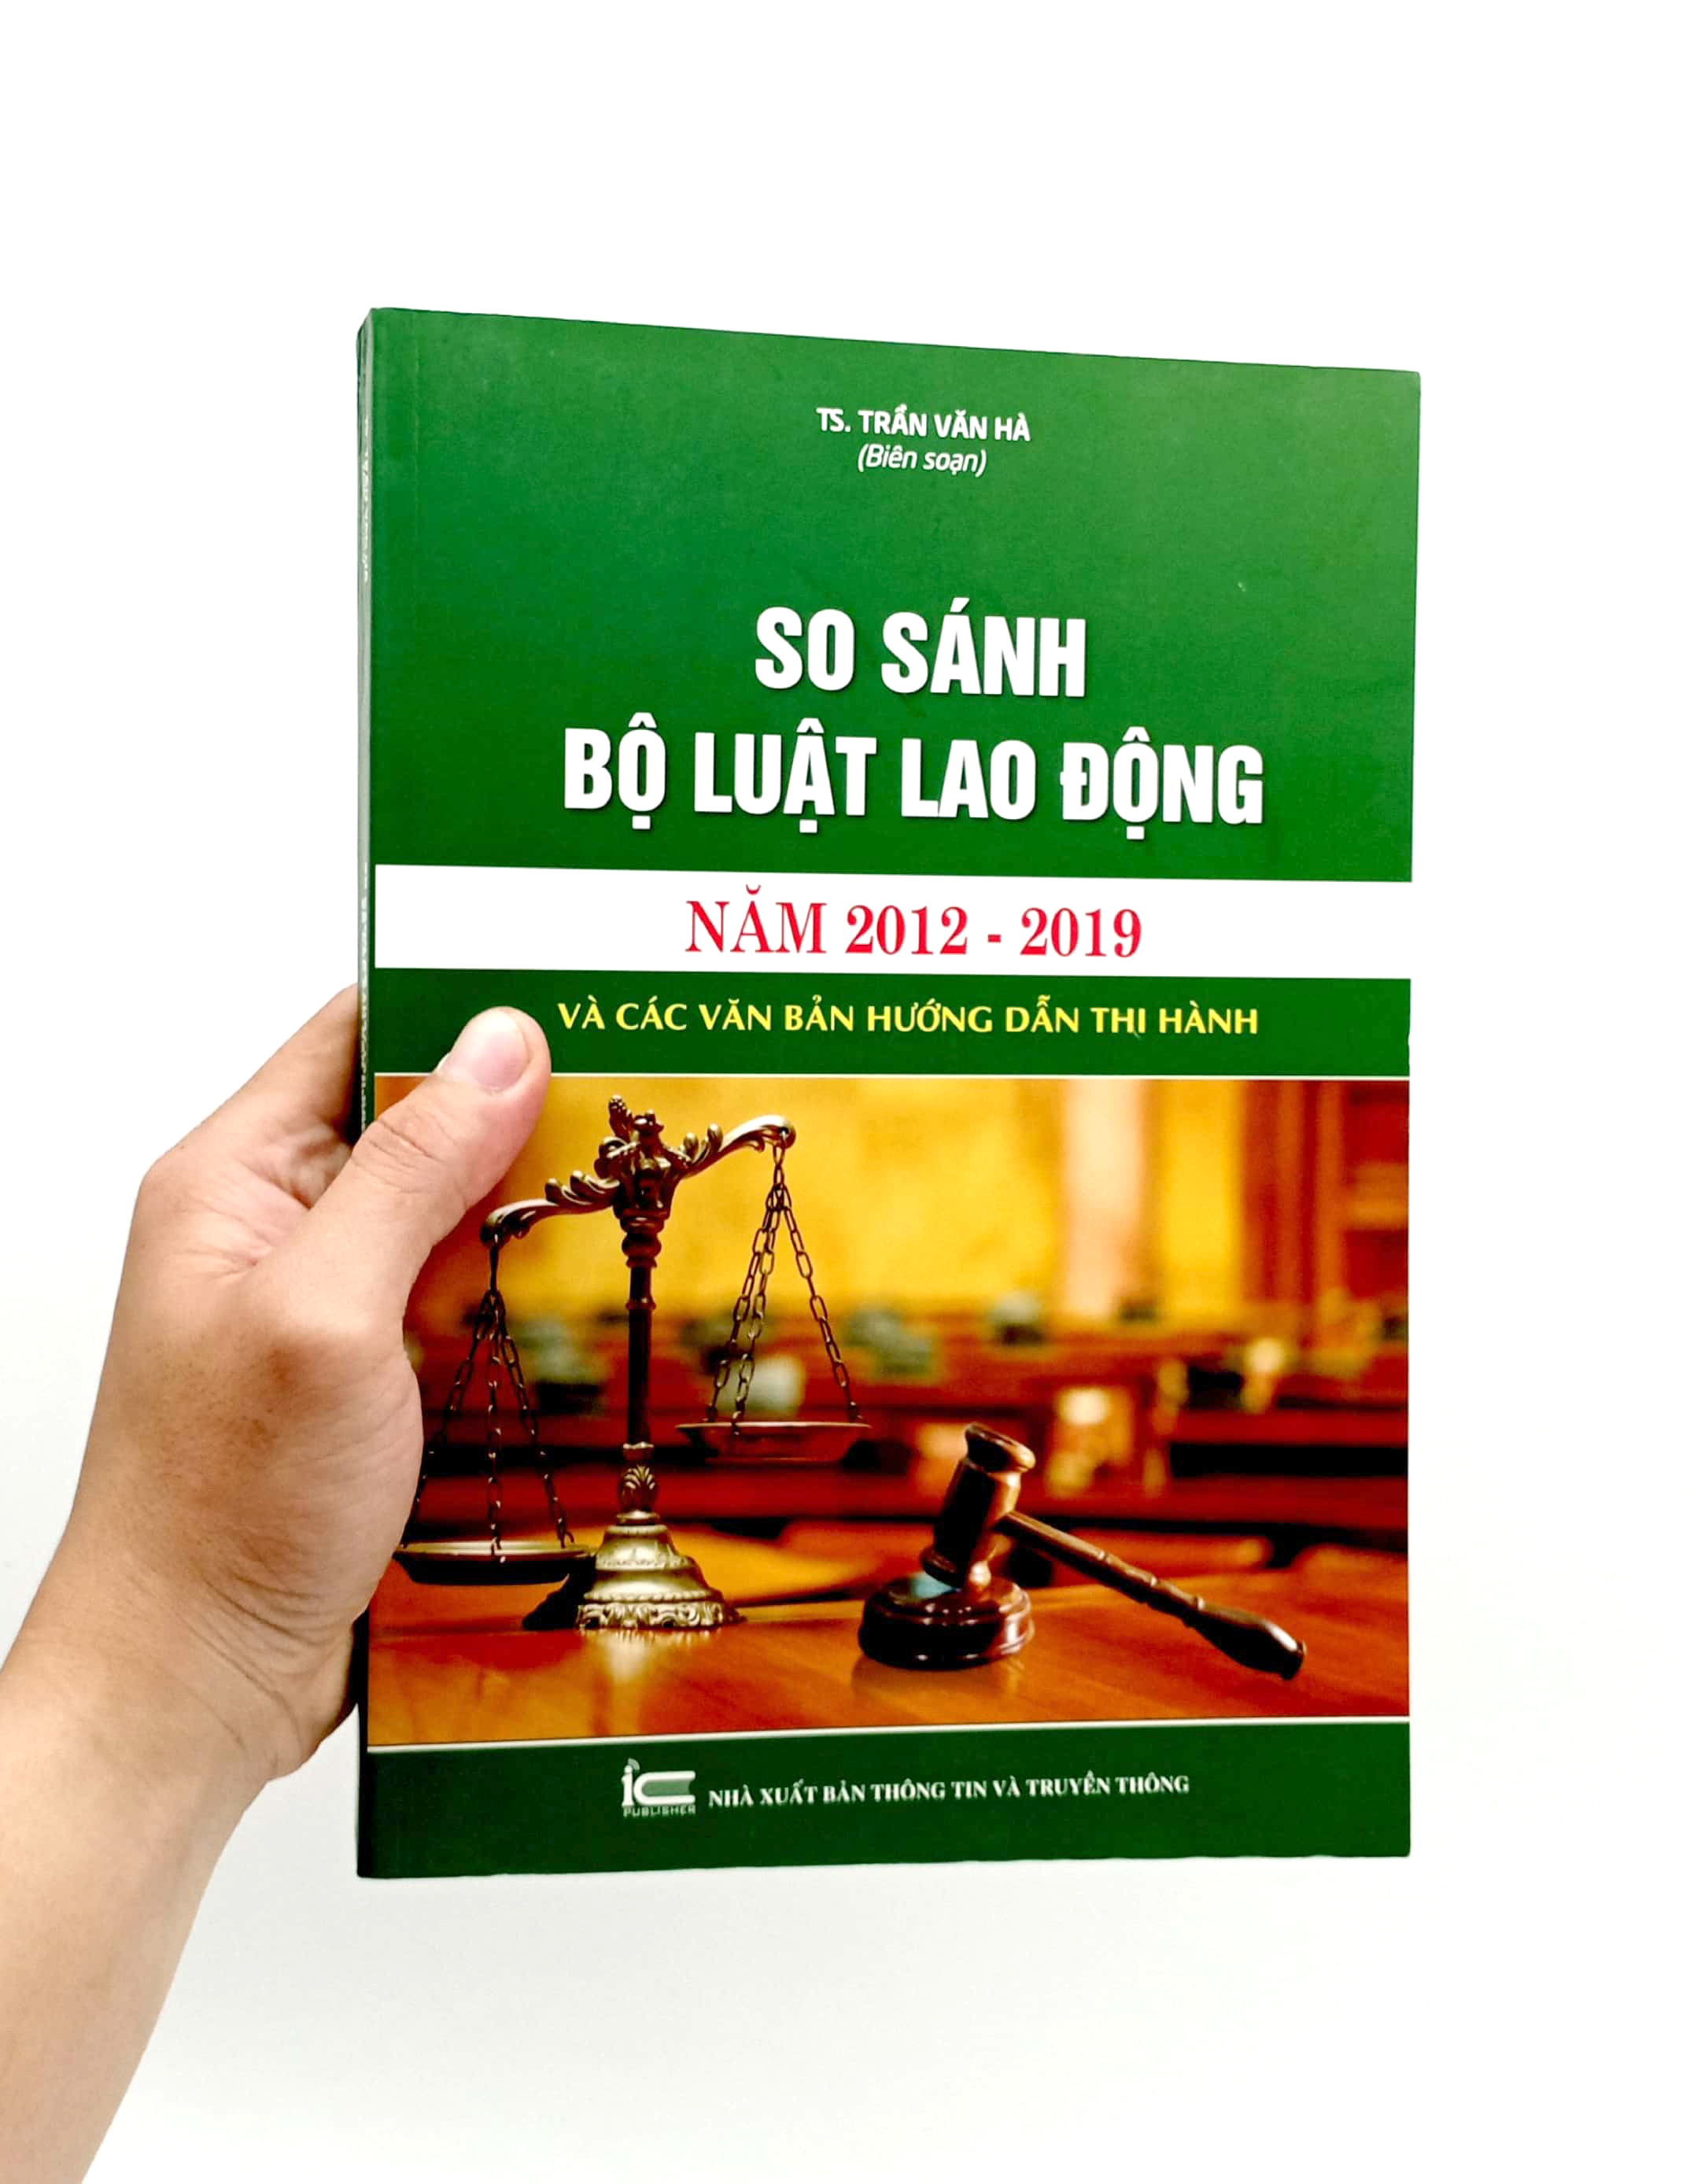 So Sánh Bộ Luật Lao Động Năm 2012-2019 Và Các Văn Bản Hướng Dẫn Thi Hành PDF